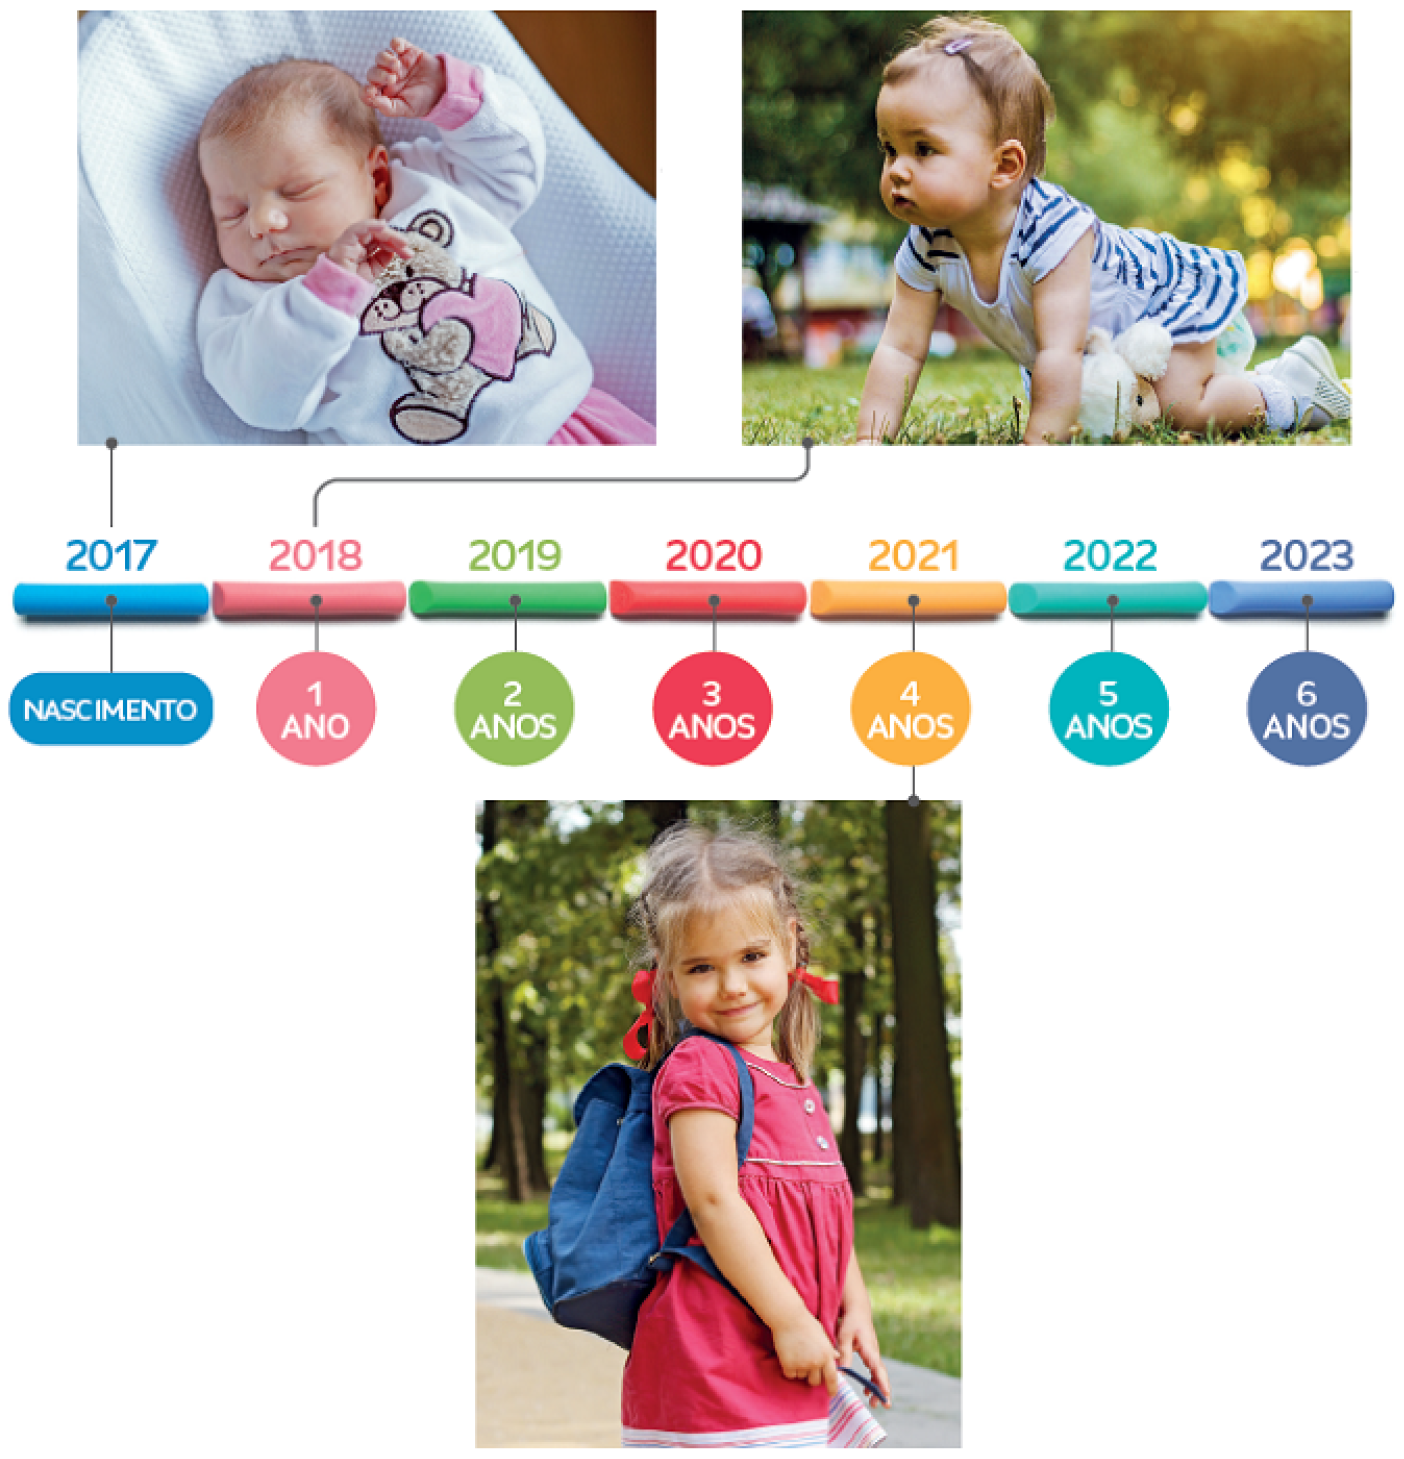 Imagem: Ilustração. Uma linha do tempo de 2017 a 2023 que apresenta cada ano com indicações de cores diferentes e a idade de uma criança. 2017: nascimento, ligada à fotografia de uma bebê recém-nascida vestida com roupa de frio, que está deitada com olhos fechados e braços levantados. 2018: 1 ano: ligada à fotografia de uma bebê vestida com roupa fresca e de fralda, engatinhando na grama. 2019: 2 anos. 2020: 3 anos. 2021: 4 anos, ligada à fotografia de uma menina de pé com vestido rosa, mochila azul e de trança no cabelo, posando para foto próximo de árvores. 2022: 5 anos. 2023: 6 anos. Fim da imagem.